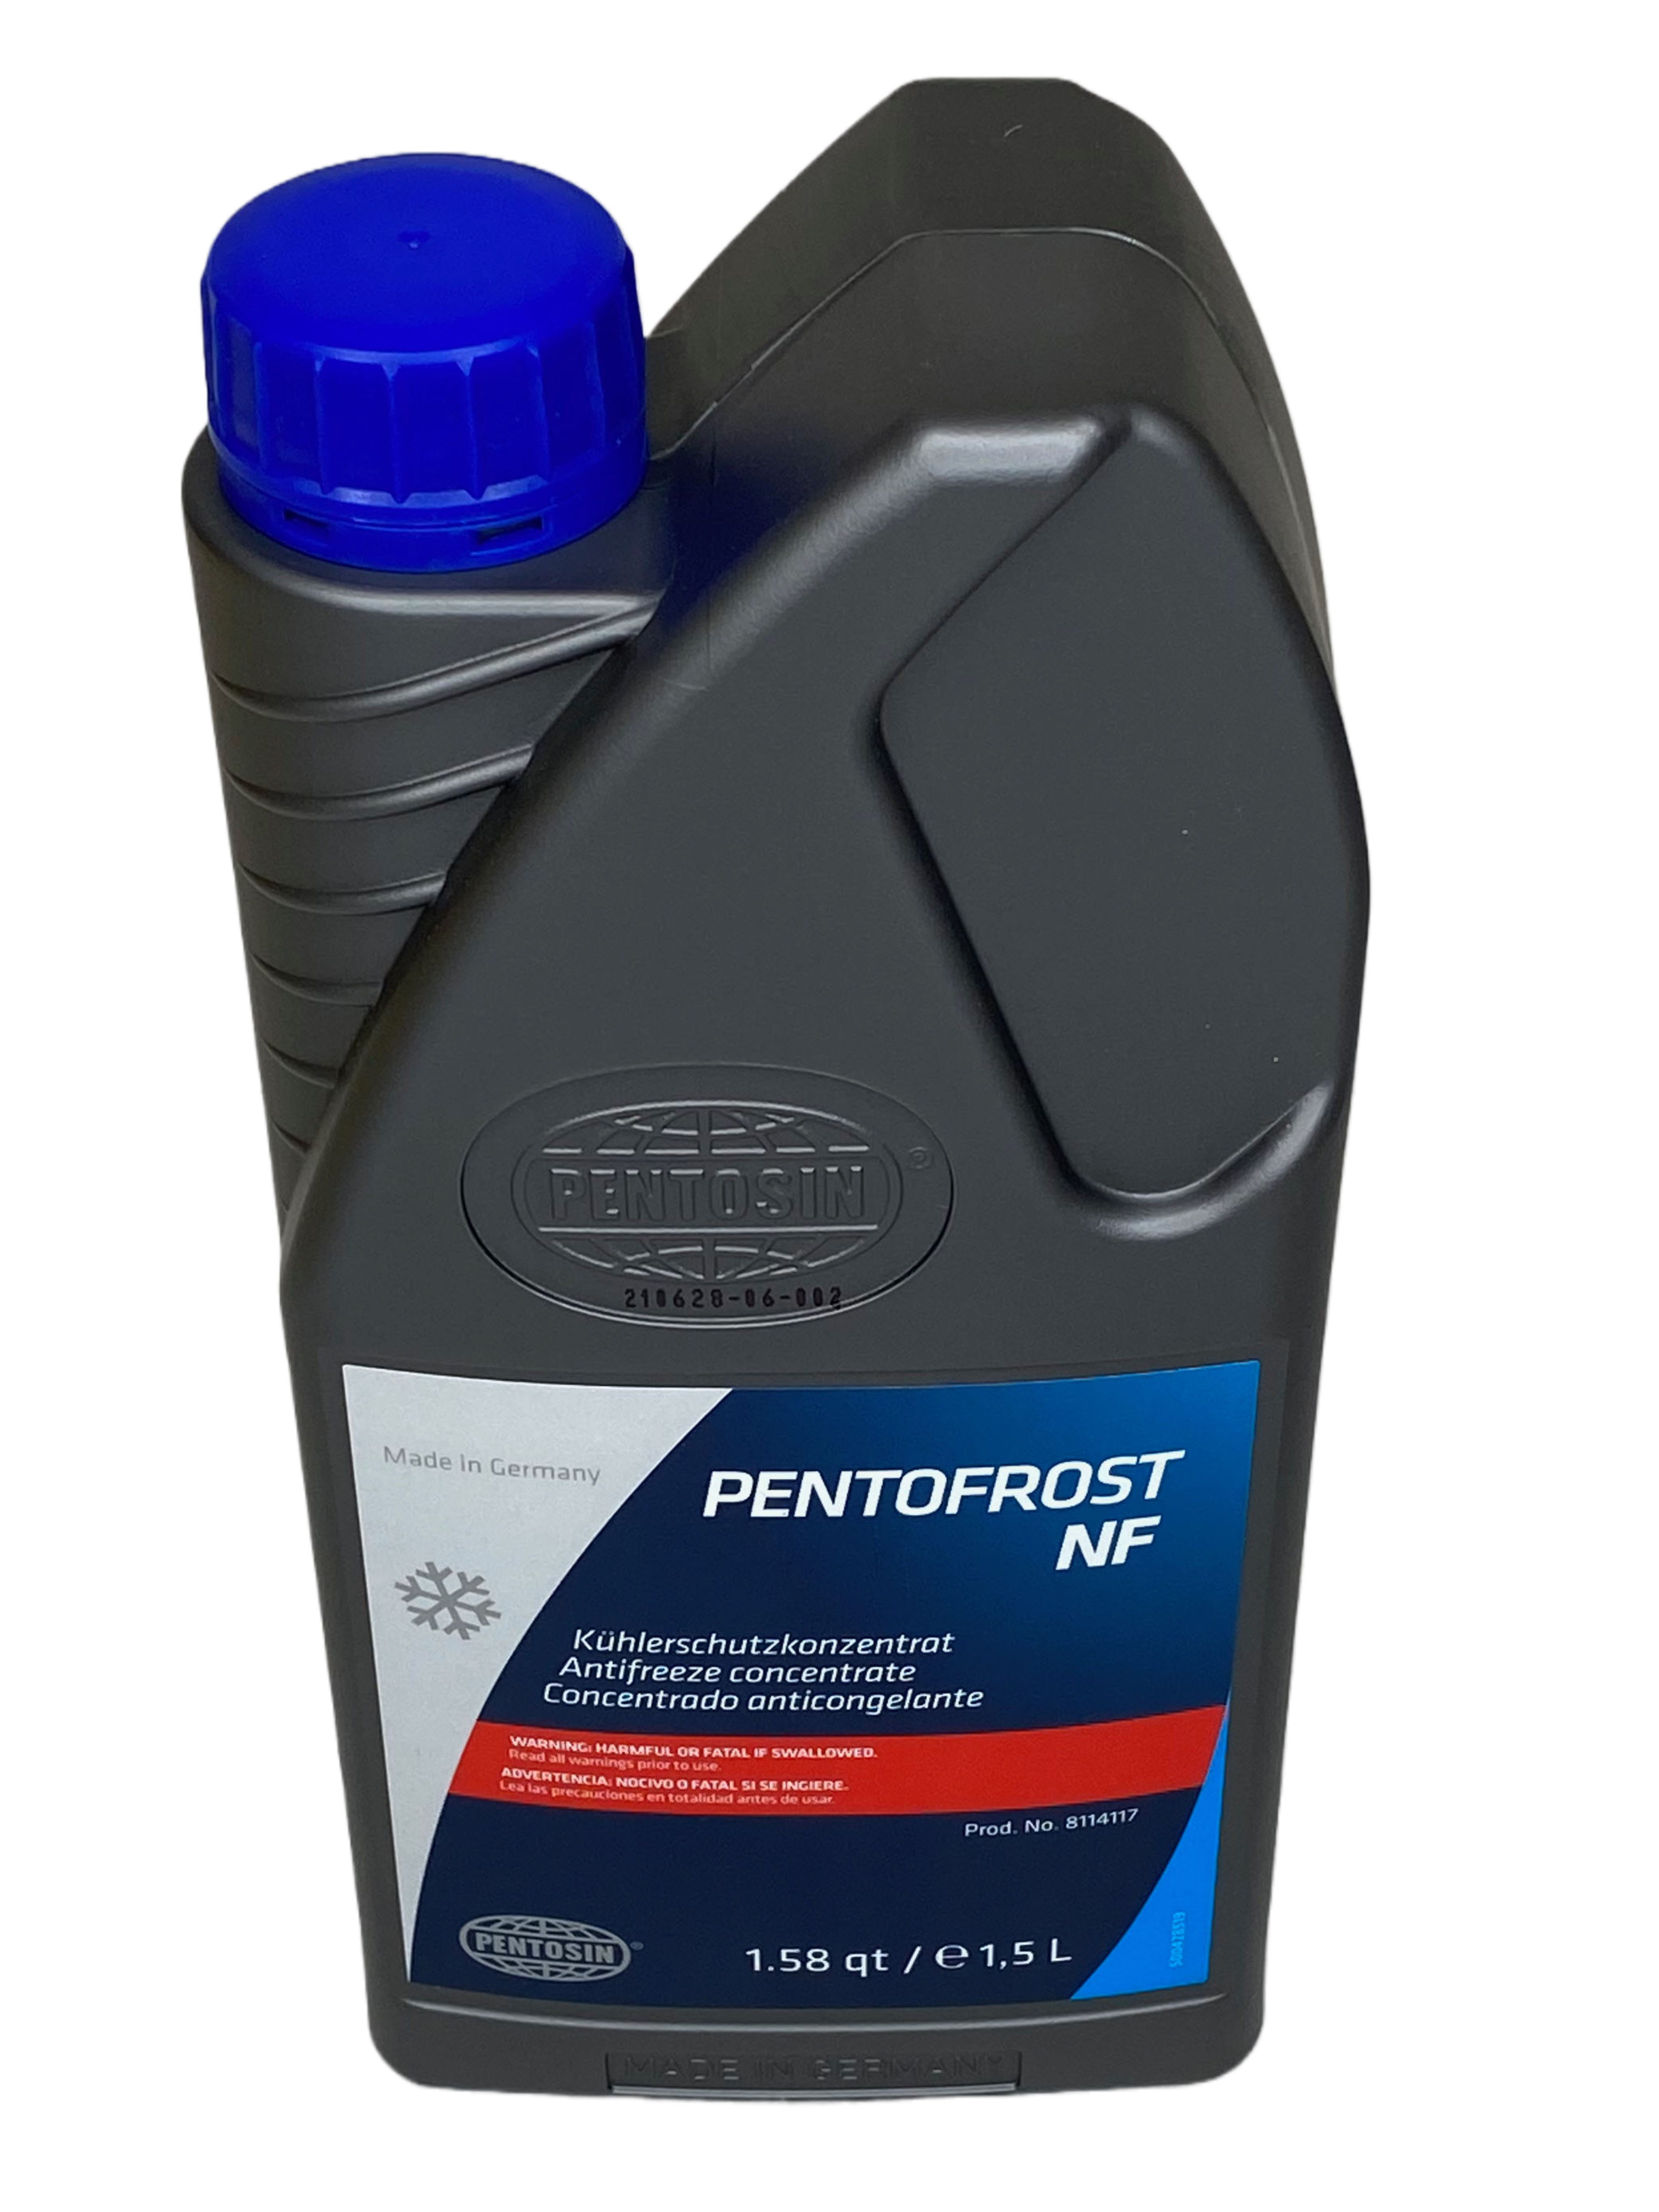  Pentosin Brake Fluid - 1 Liter : Automotive